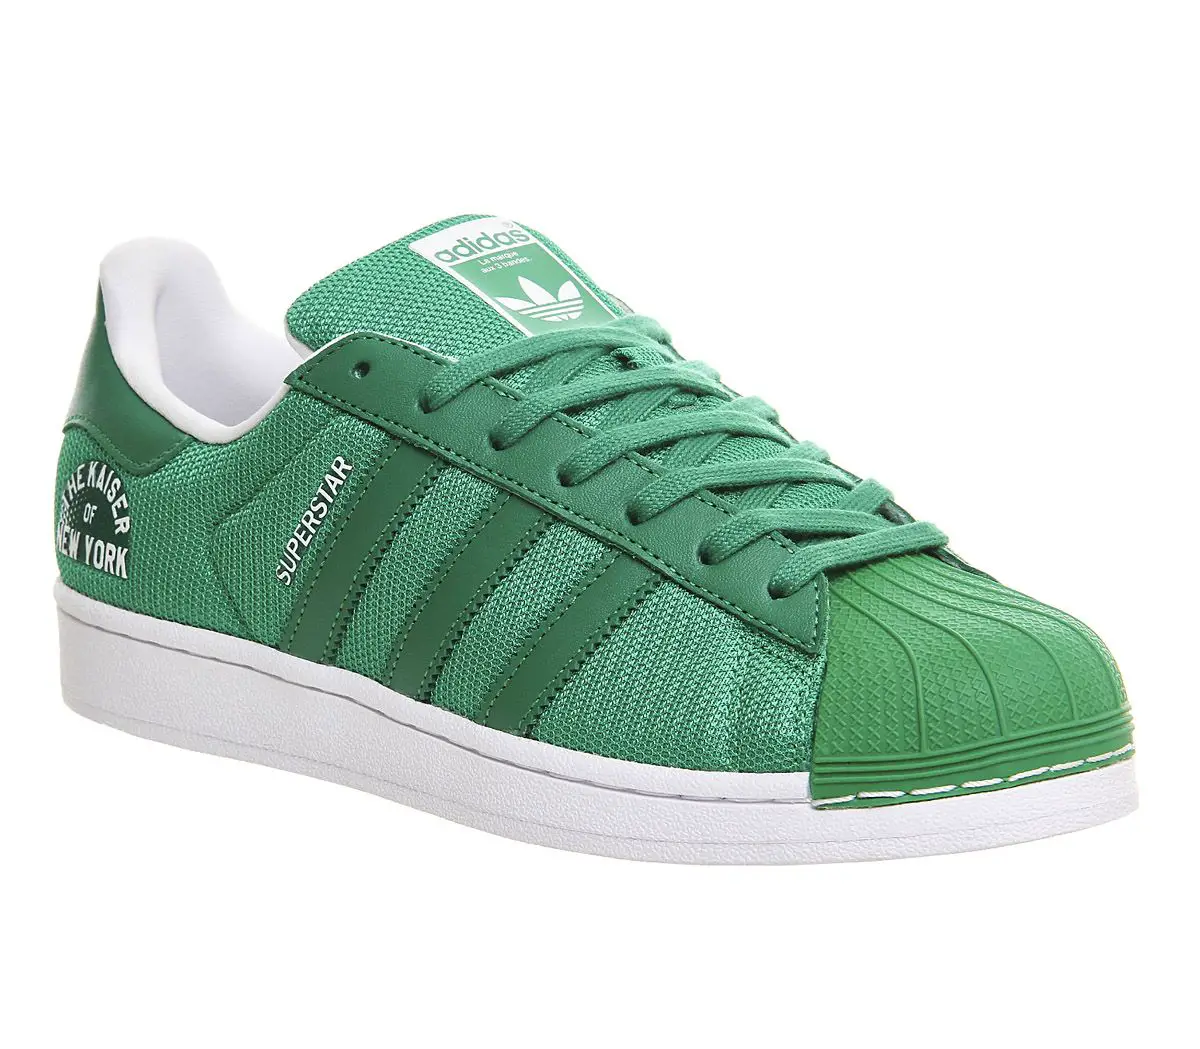 Adidas Superstar 1 Green White Beckenbauer Pack